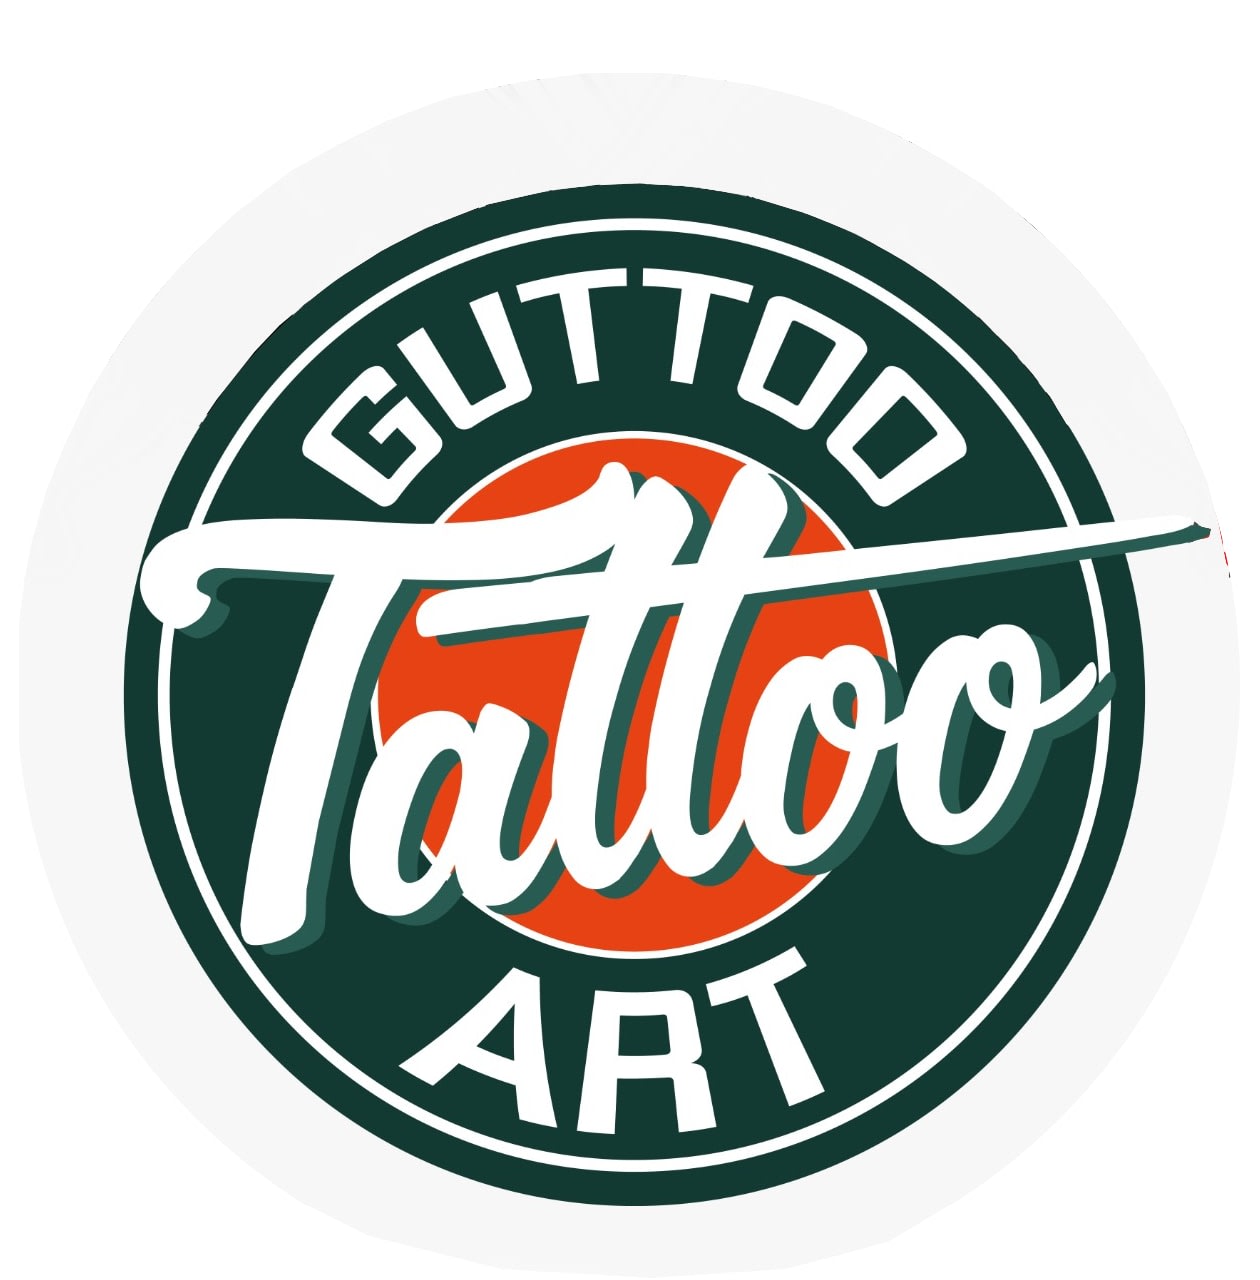 Guttoo Tattoo Art